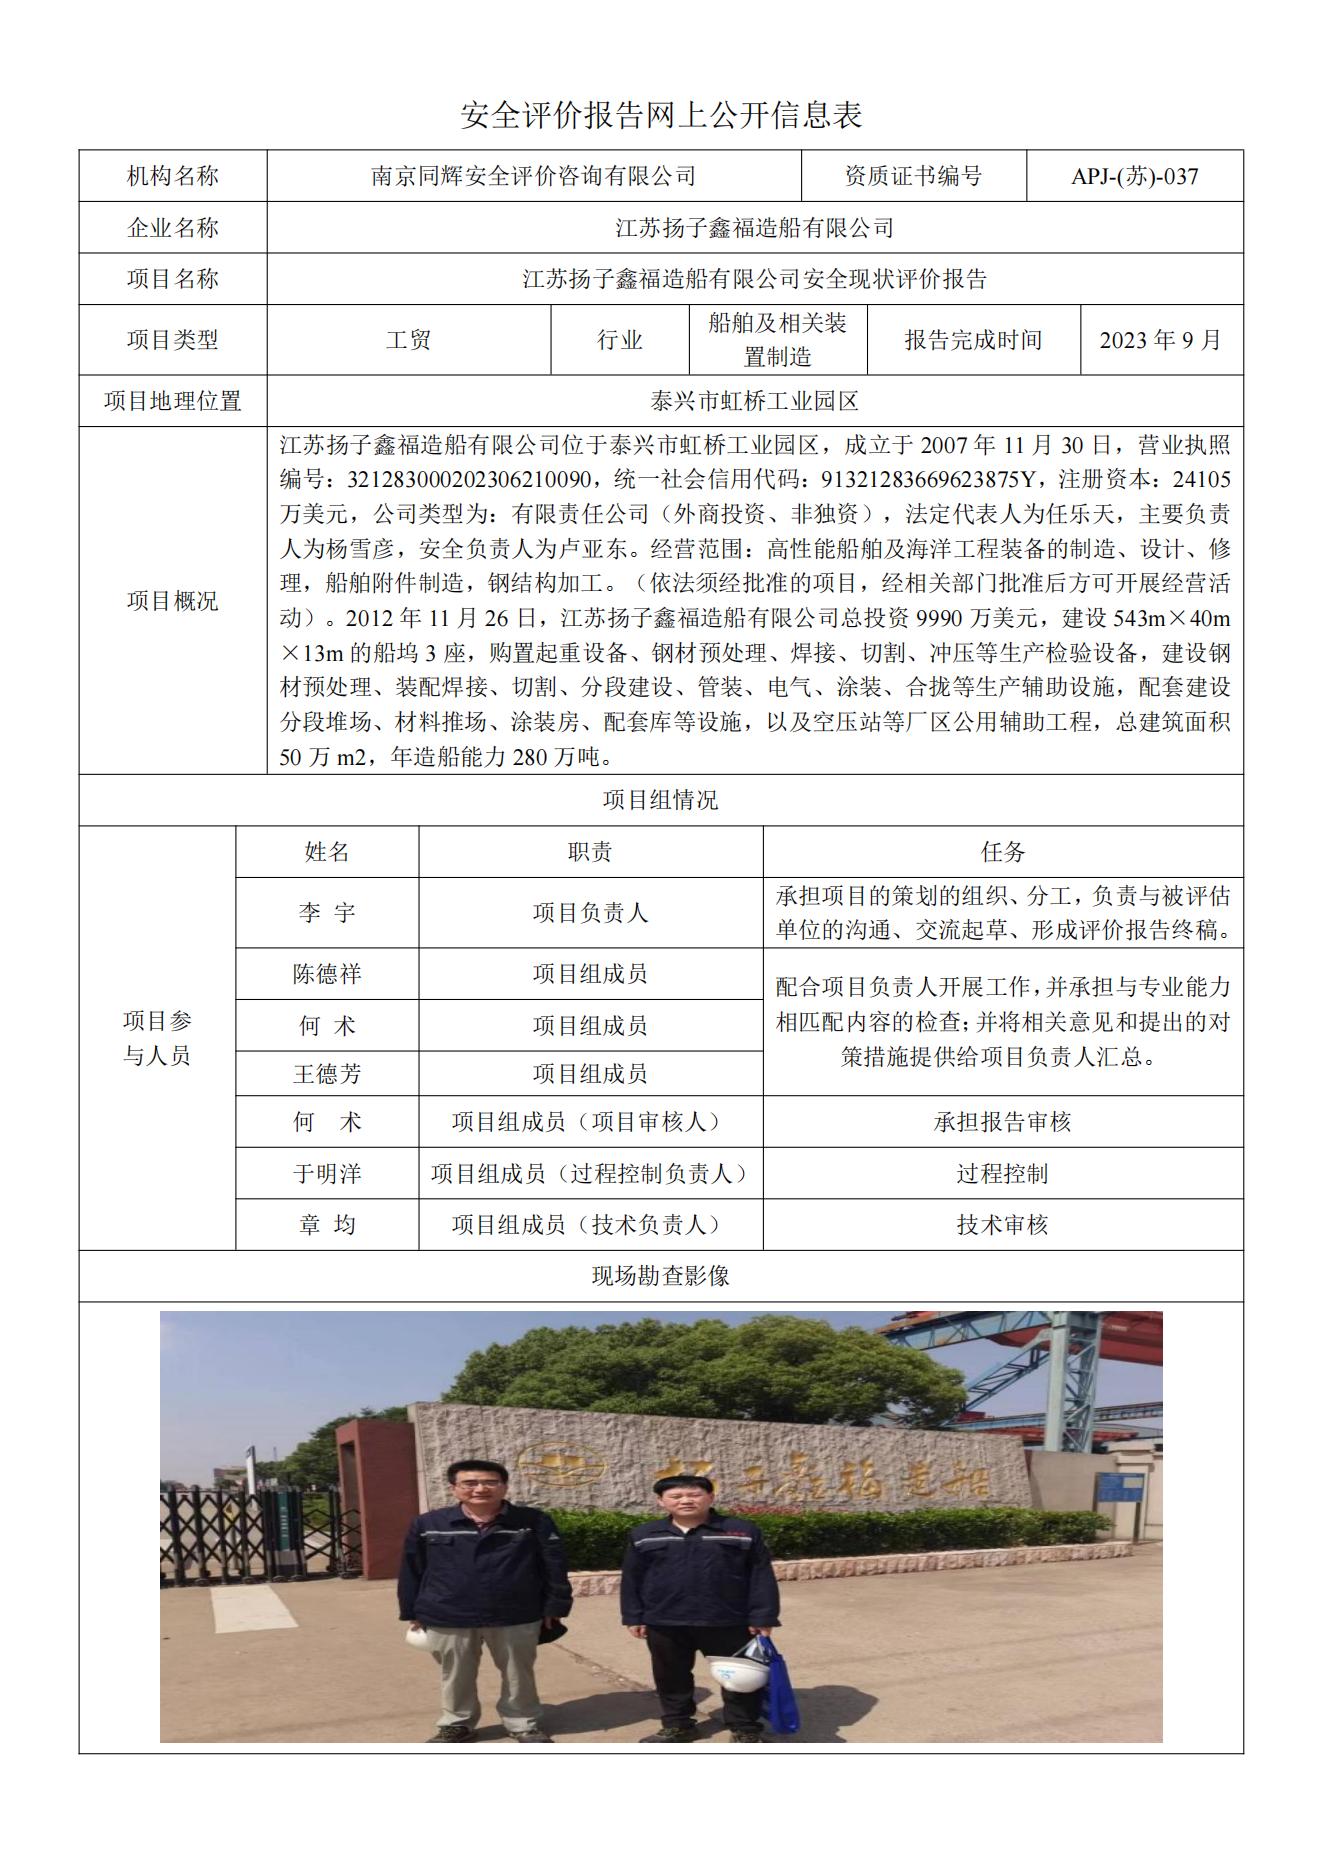 15.江苏扬子鑫福造船有限公司安全现状评价报告  网上公开信息表_00.jpg